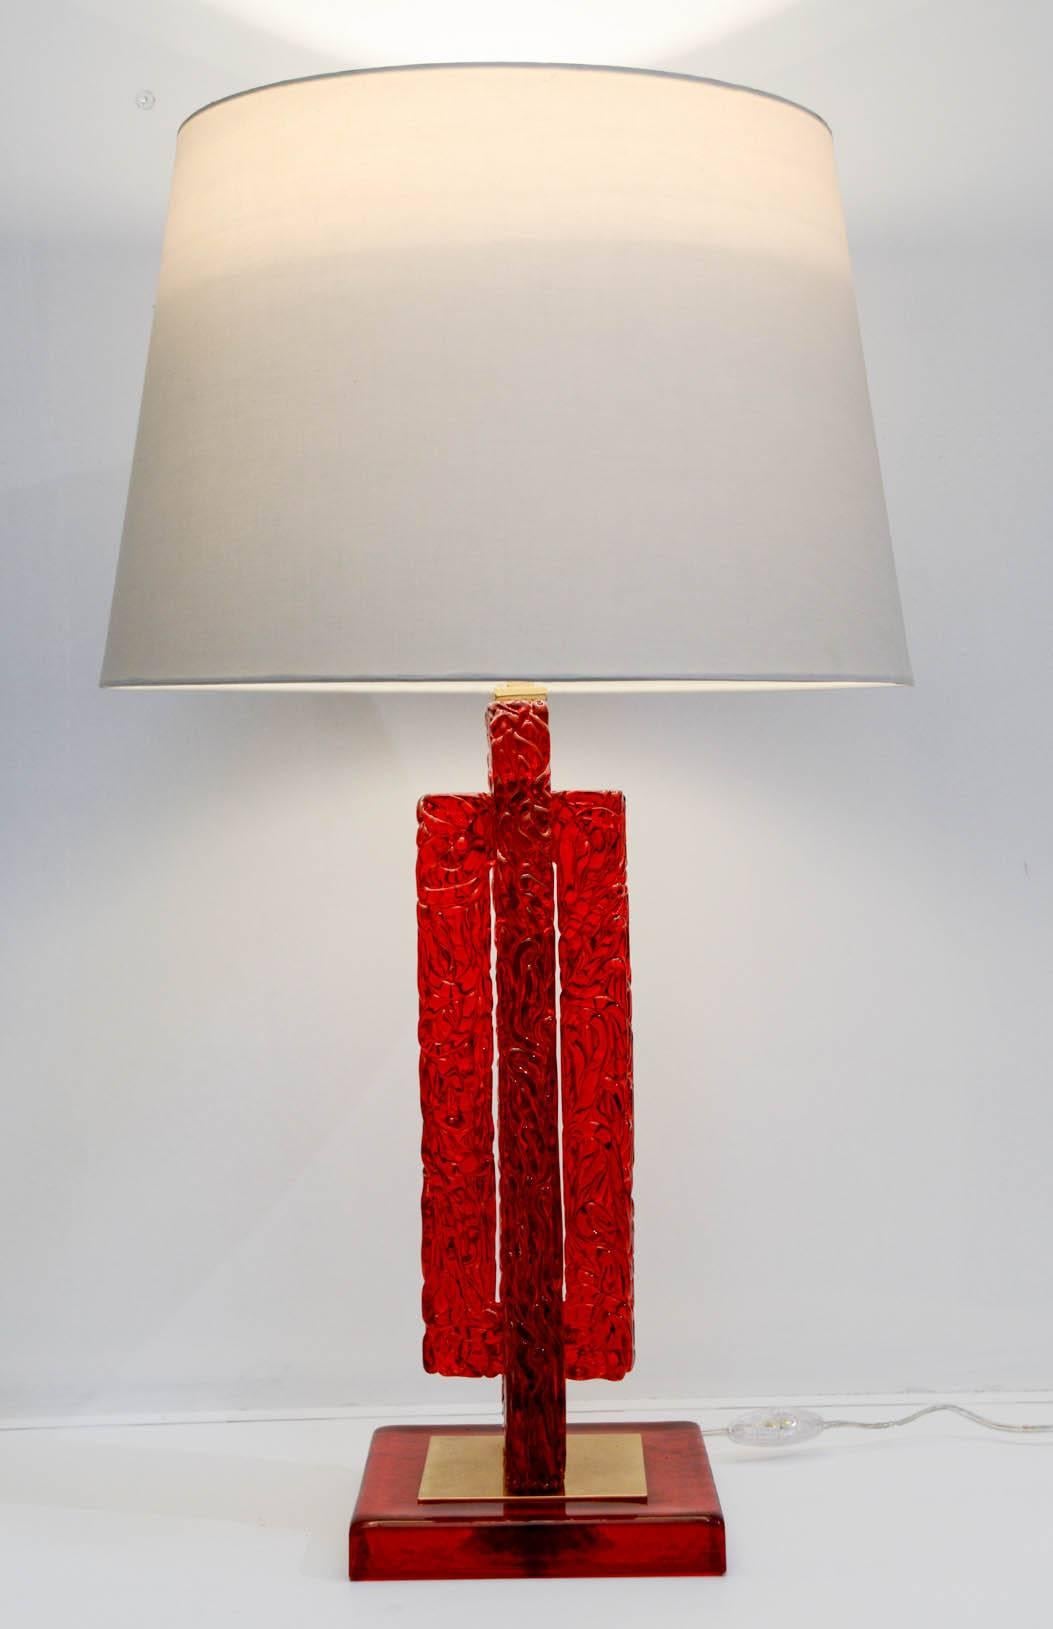 Belle paire de lampes en verre rouge de Murano
Dimensions données sans ombre
Aucune ombre n'est fournie.